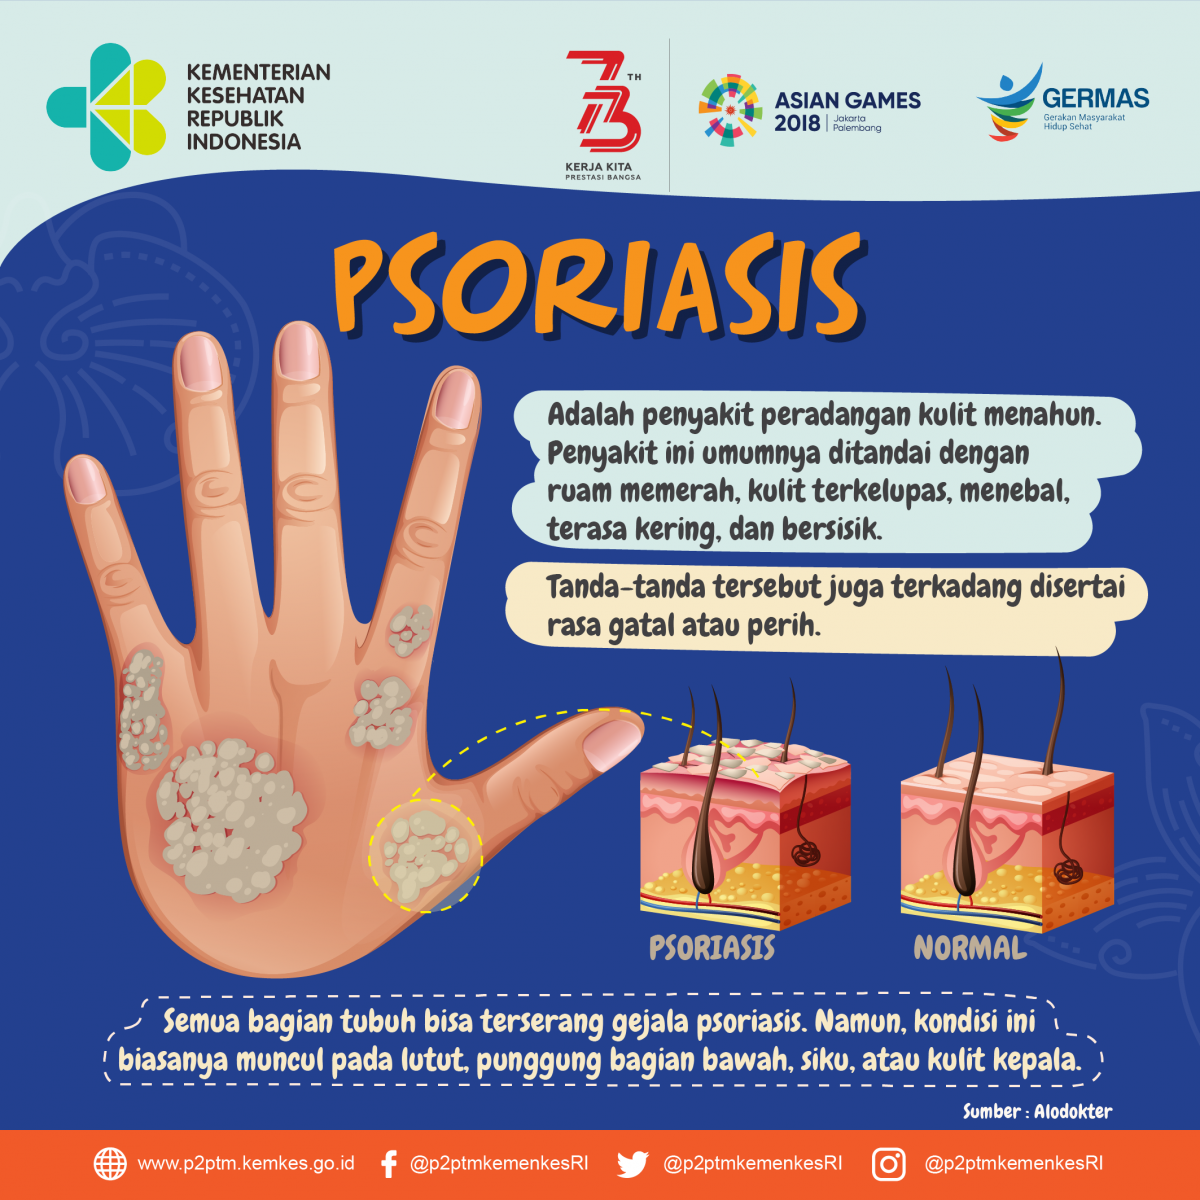 Apa itu Psoriasis?